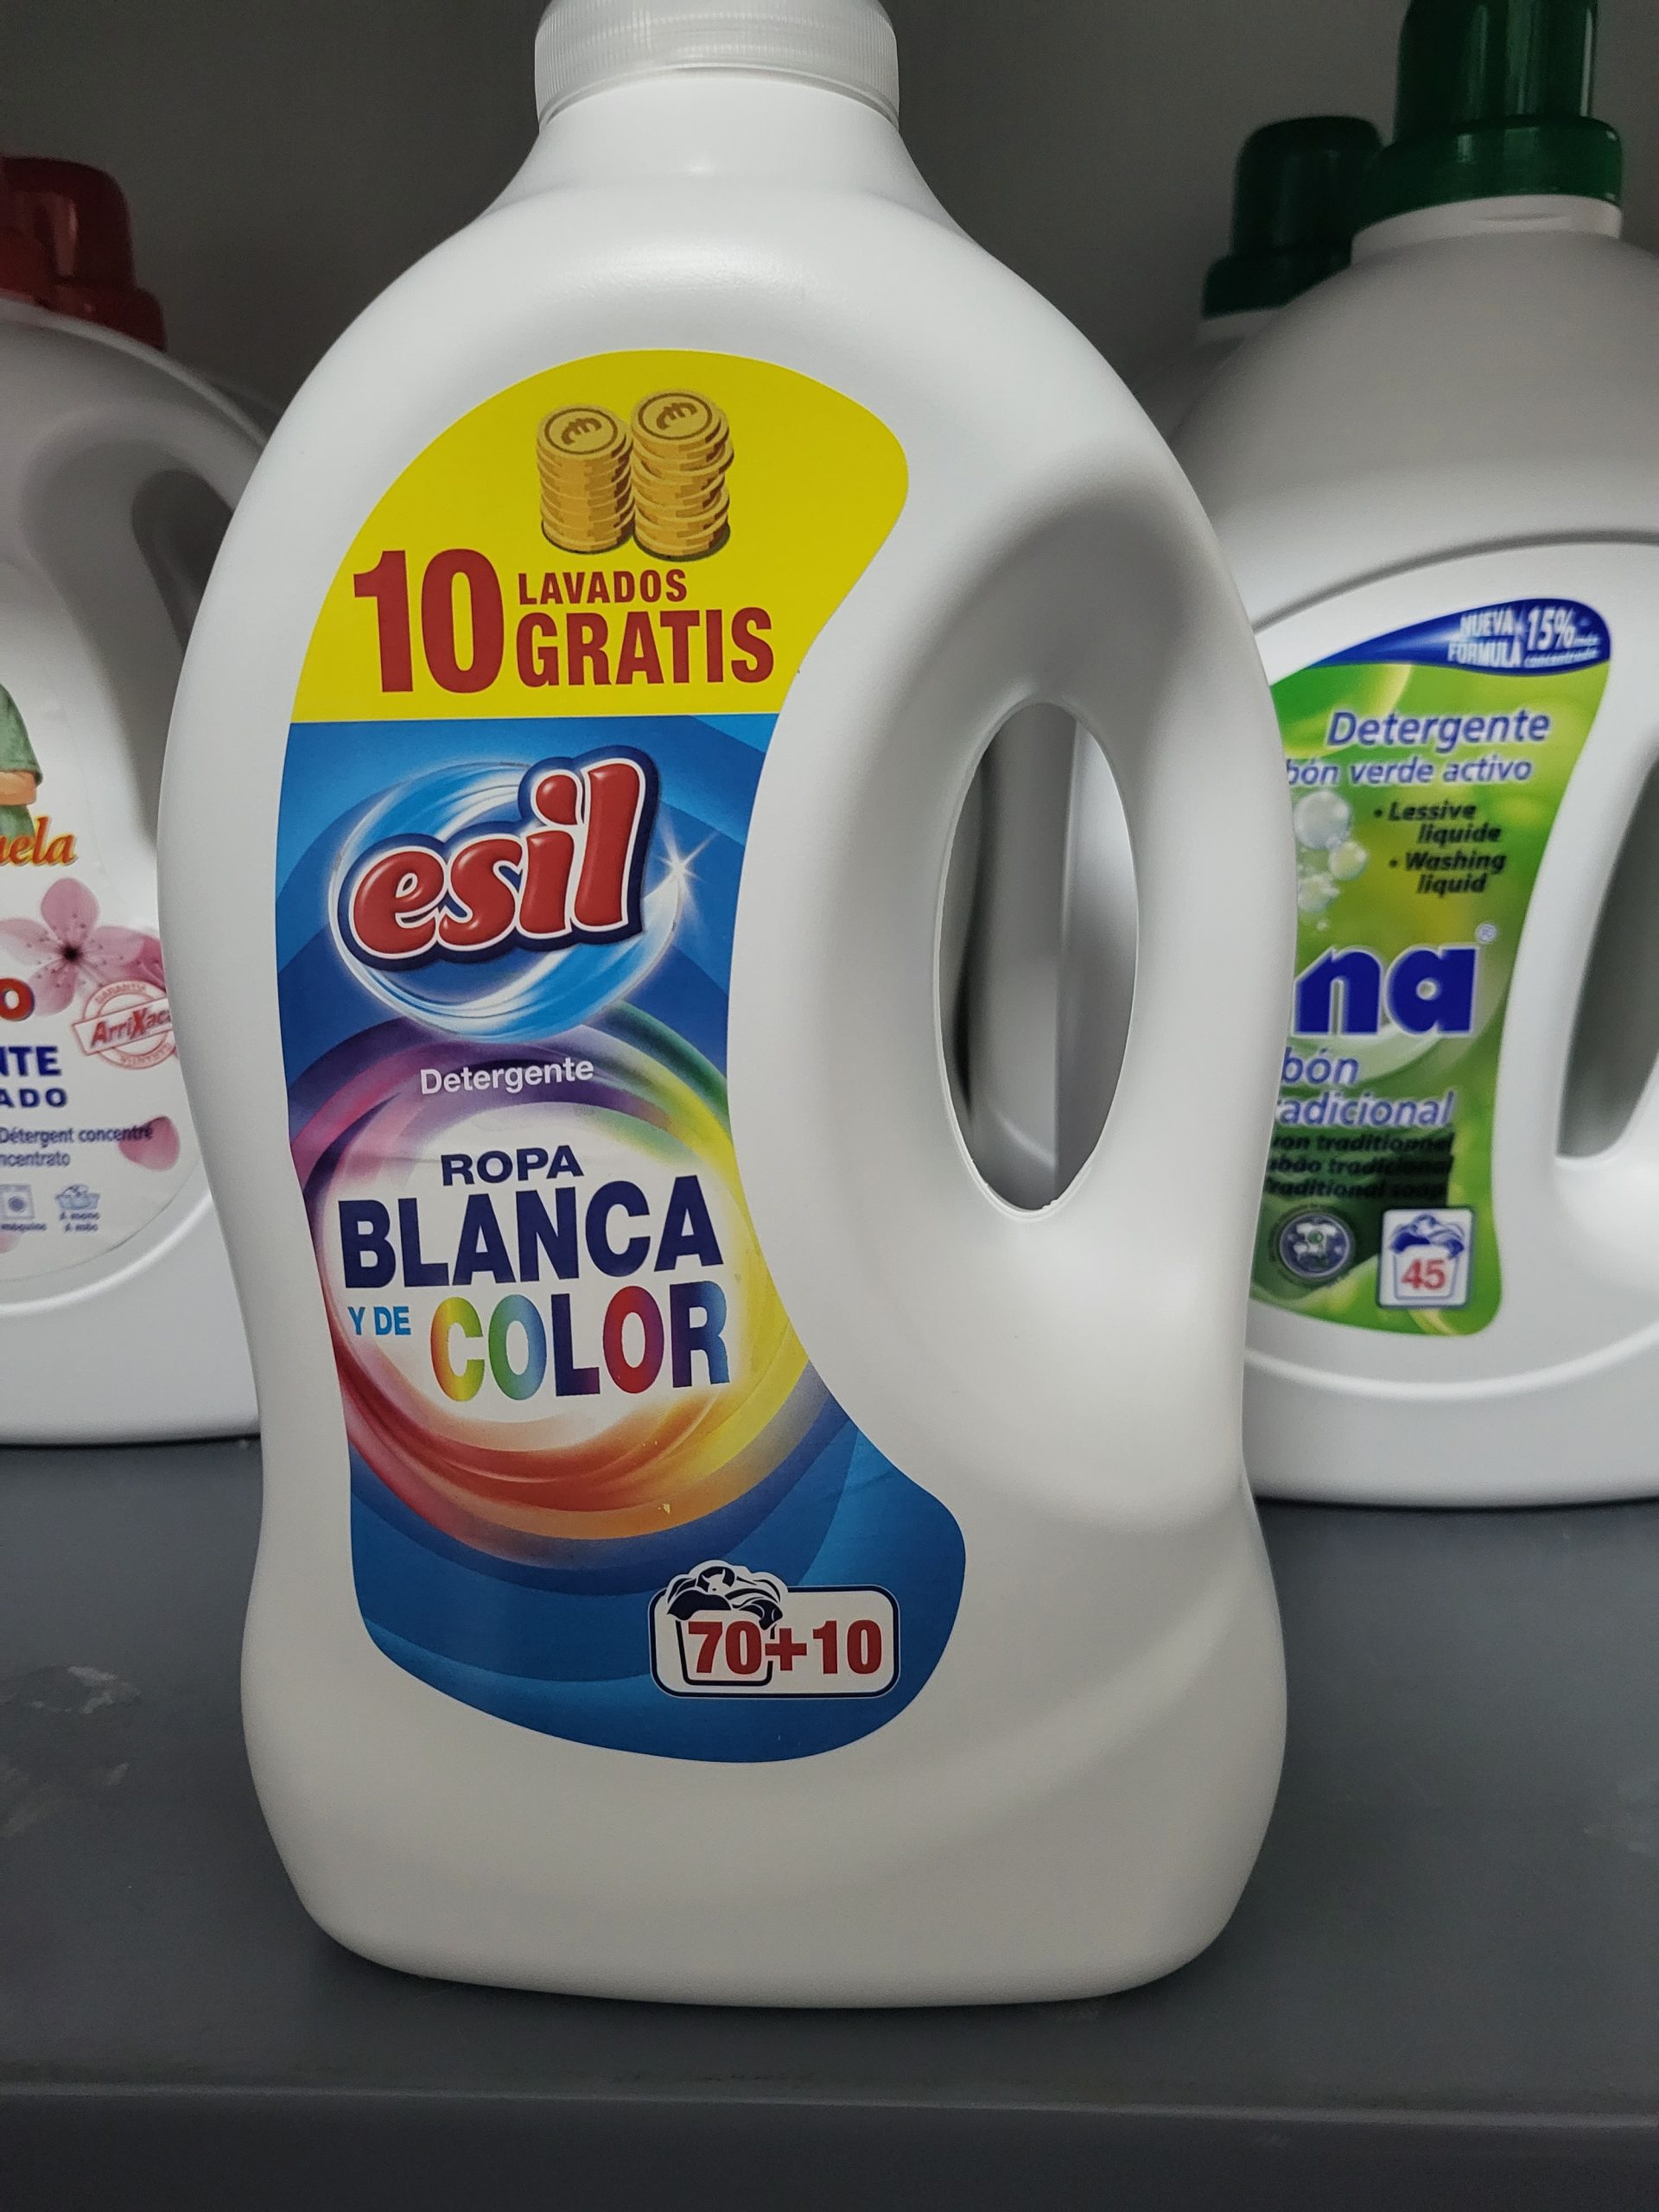 Detergente Esil ropa blanca y de color